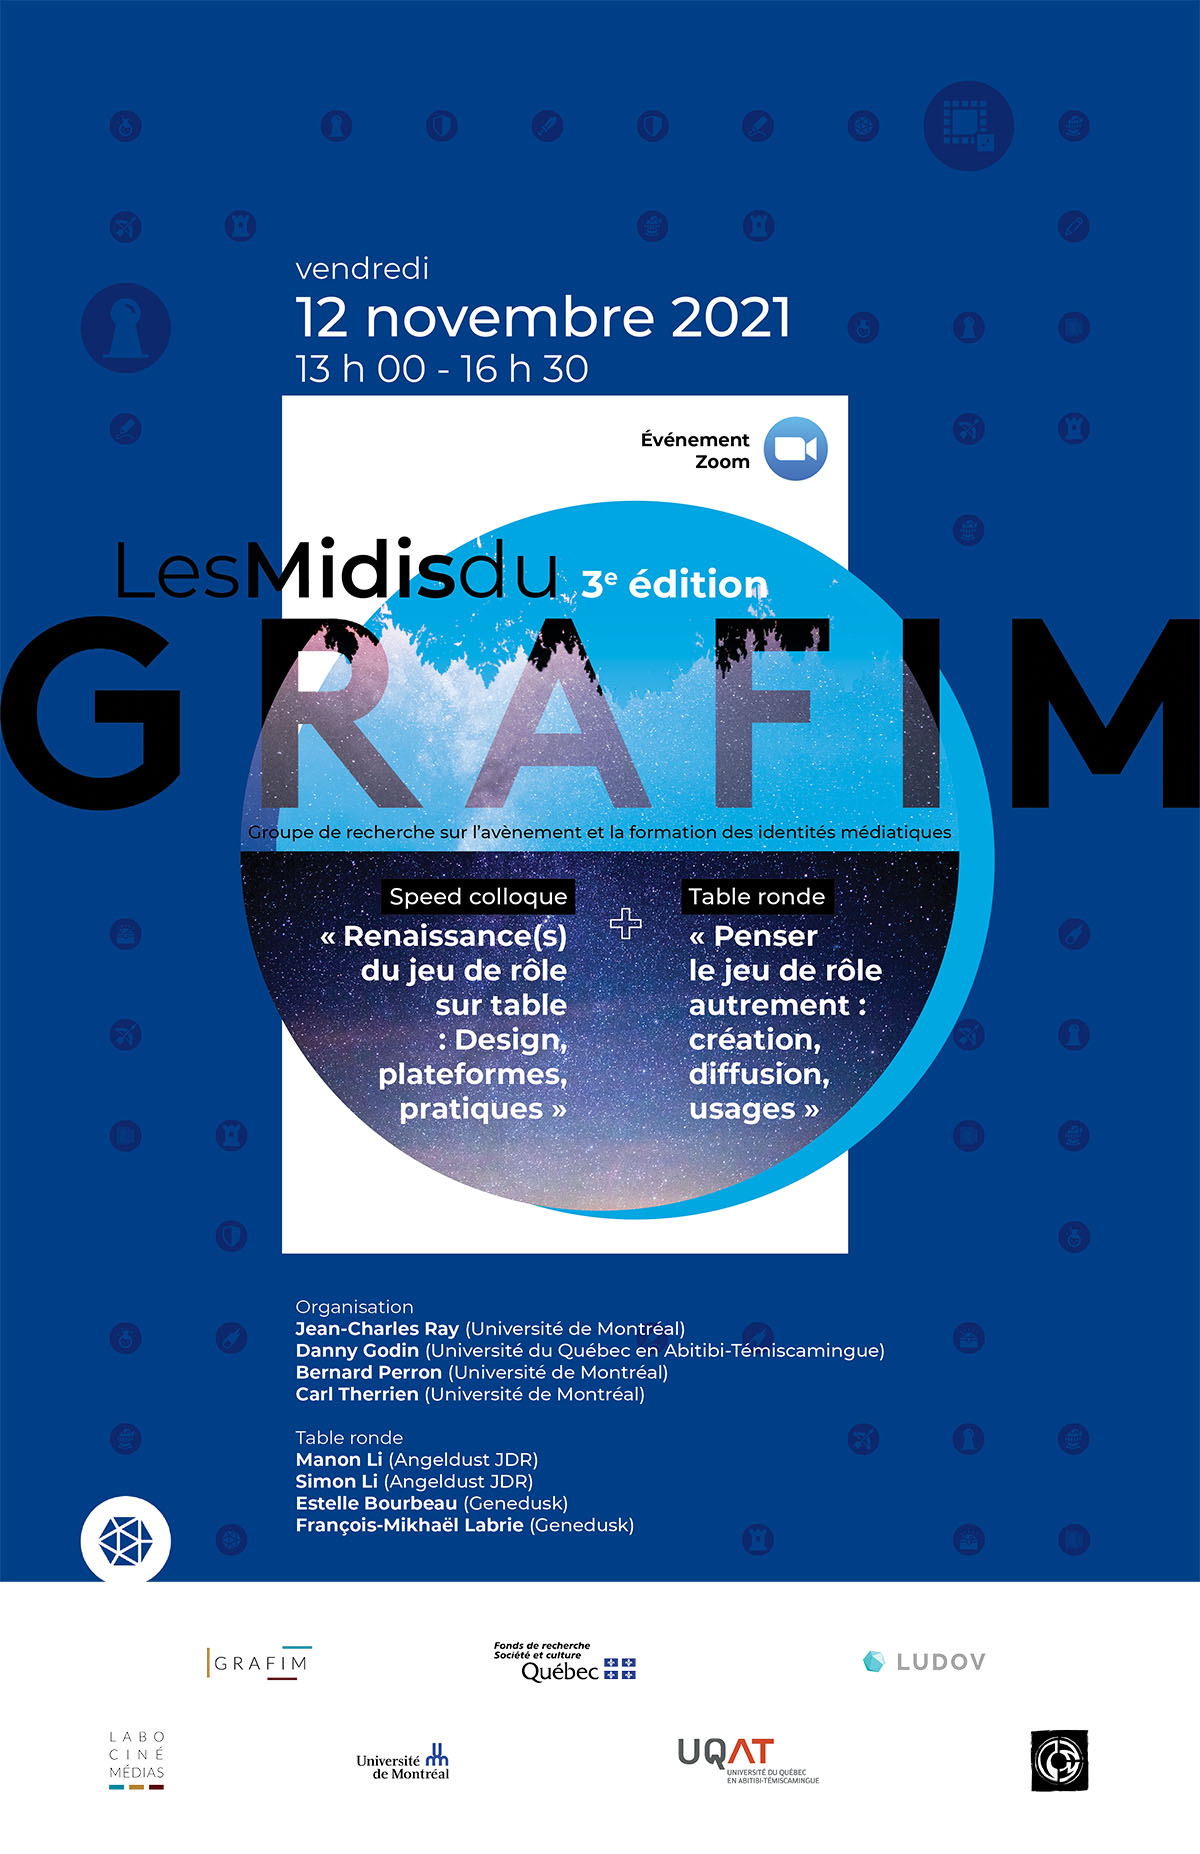 Les Midis du GRAFIM - 3e édition